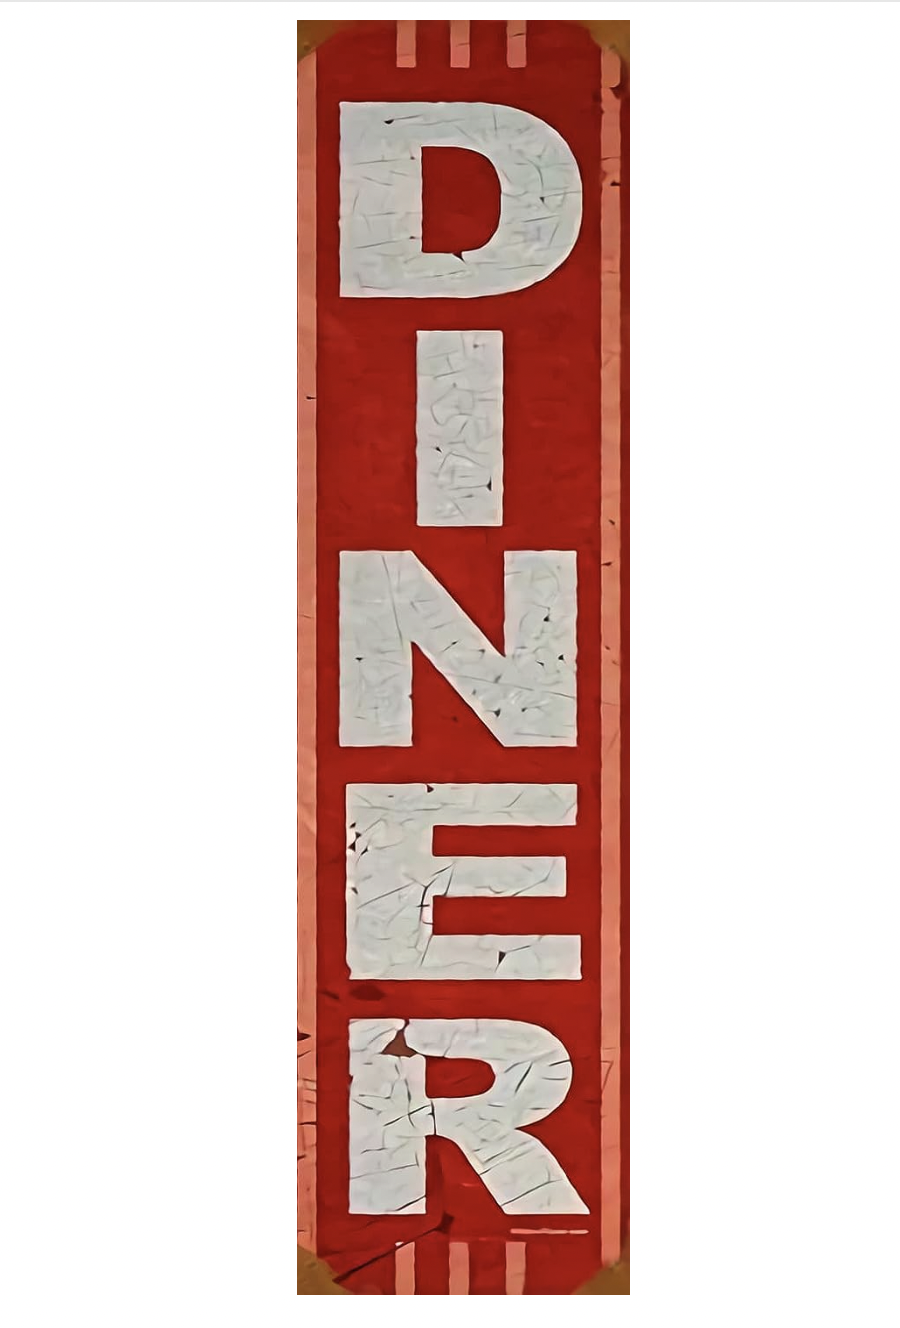 Retro Diner Sign